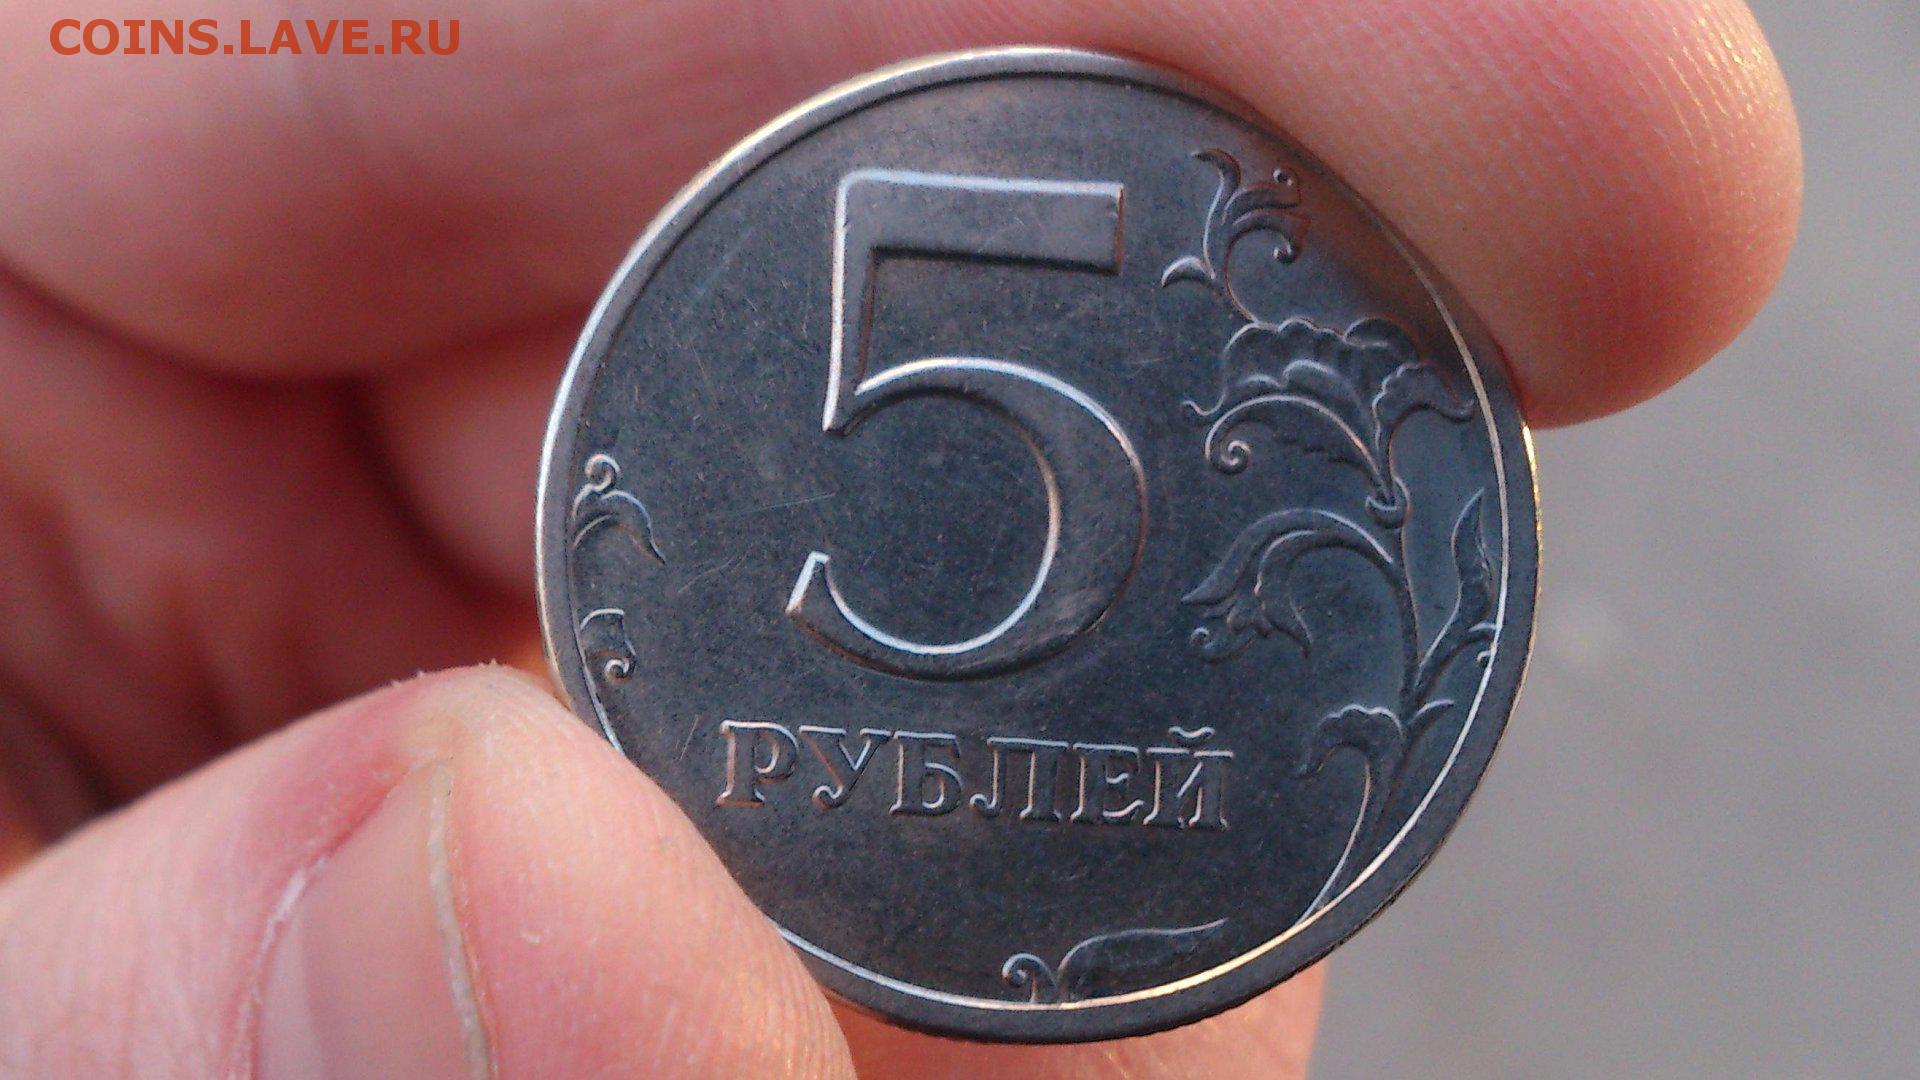 17 5 в рублях. Монеты. Монеты рубли. Монета 5 рублей в руке. Монетка 5 рублей.